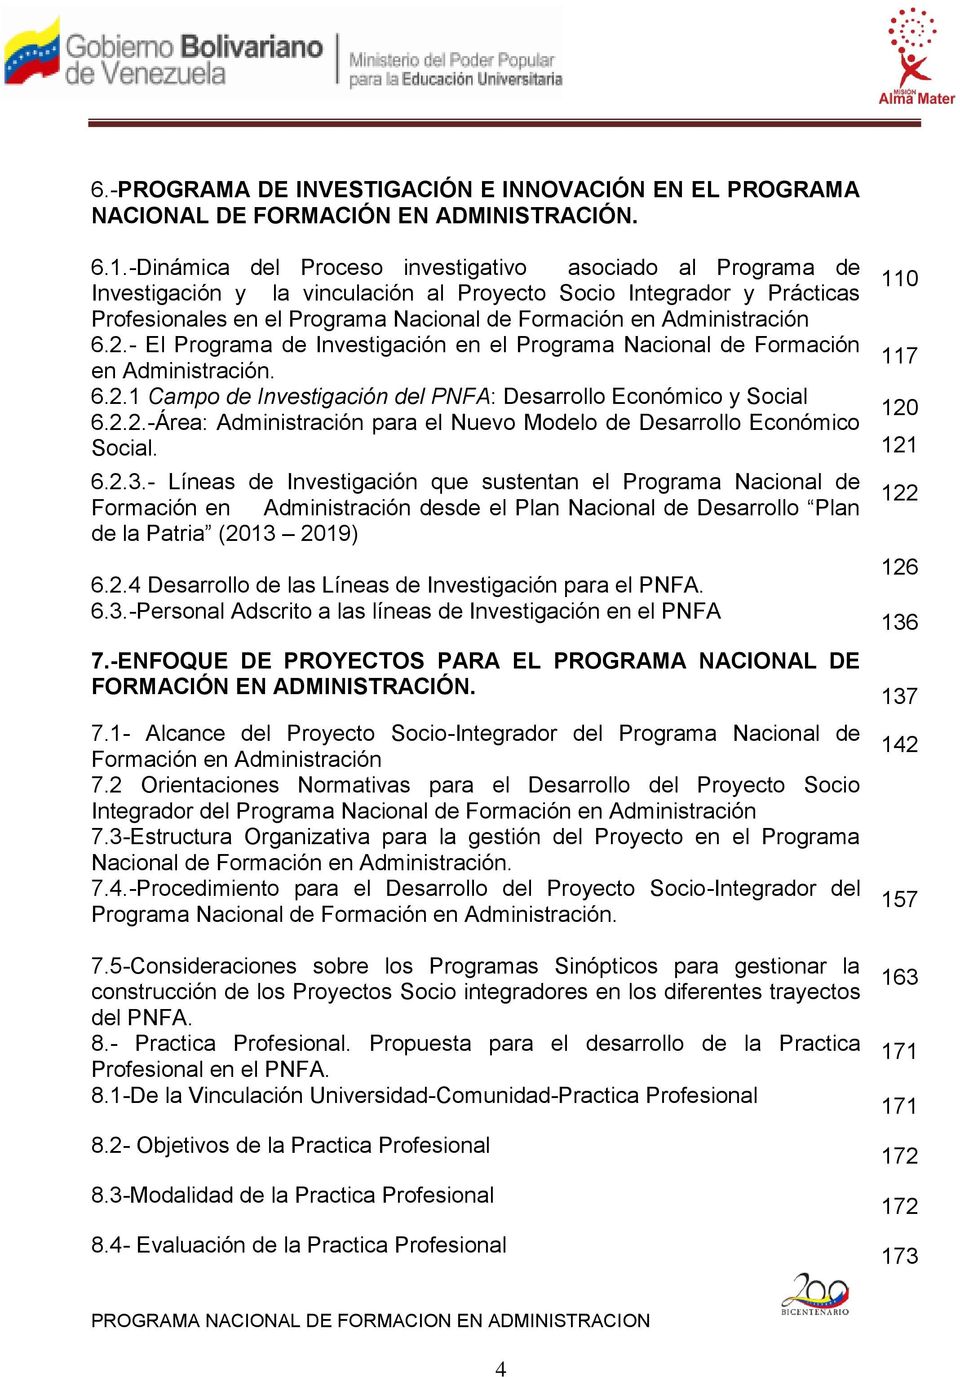 Administración 6.2.- El Programa de Investigación en el Programa Nacional de Formación en Administración. 6.2.1 Campo de Investigación del PNFA: Desarrollo Económico y Social 6.2.2.-Área: Administración para el Nuevo Modelo de Desarrollo Económico Social.